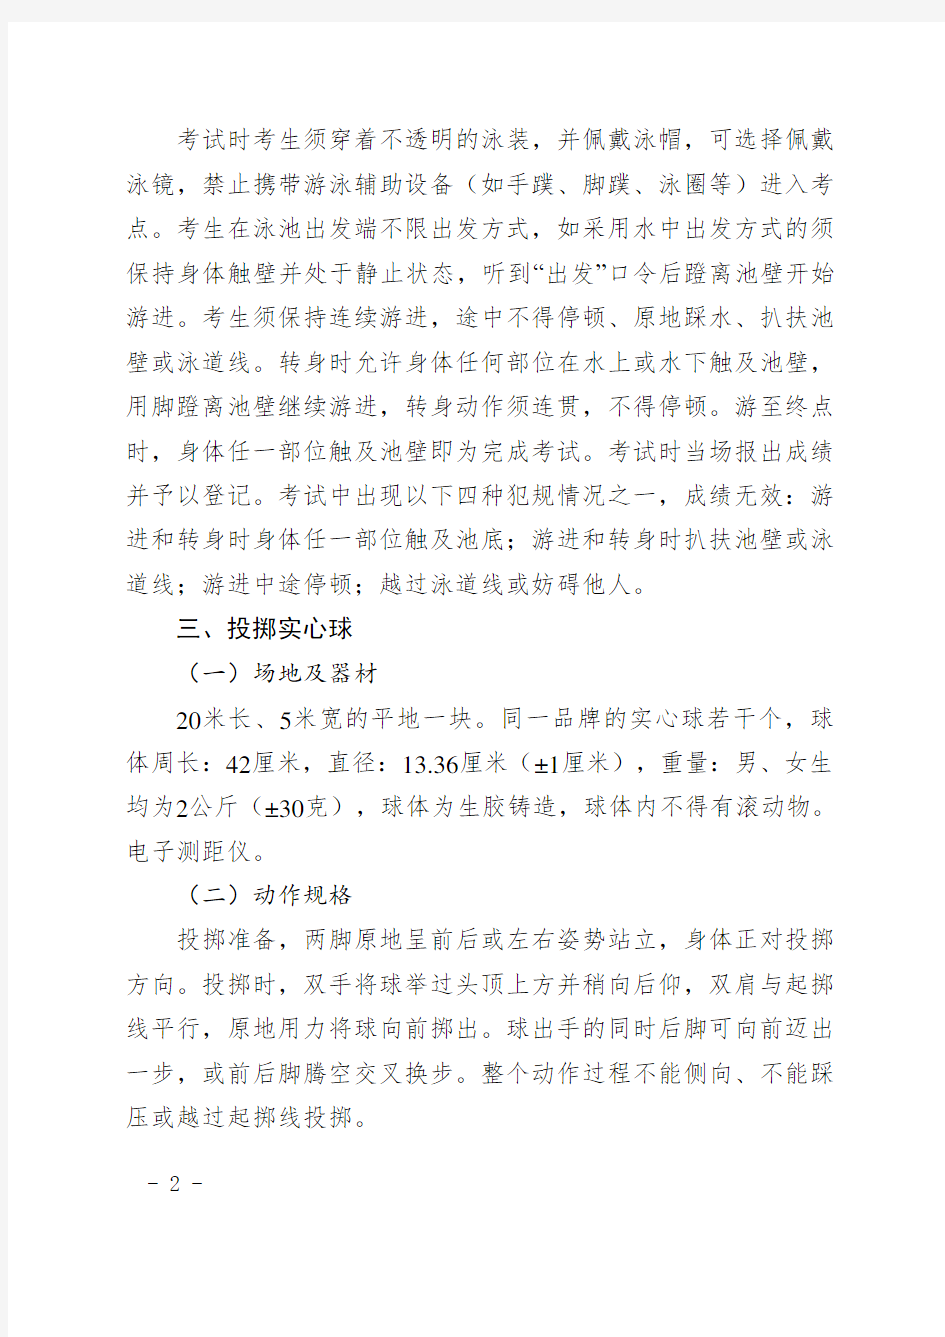 5.广州市初中学业水平考试体育与健康考试项目规则评分标准